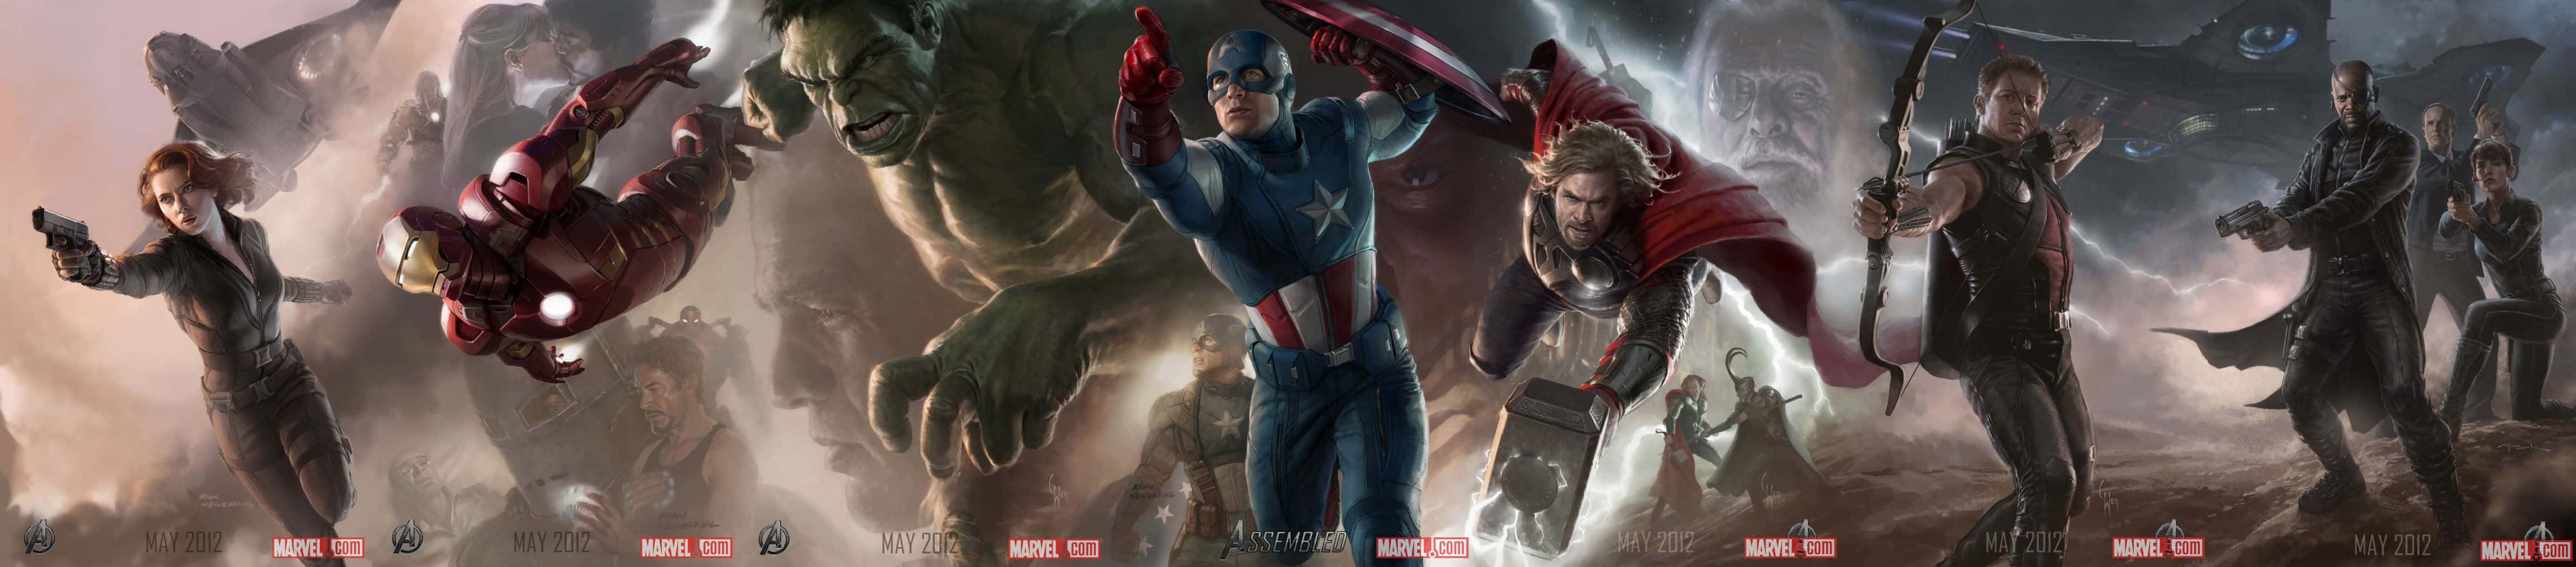 De Avengers - Verdens ende Wallpaper